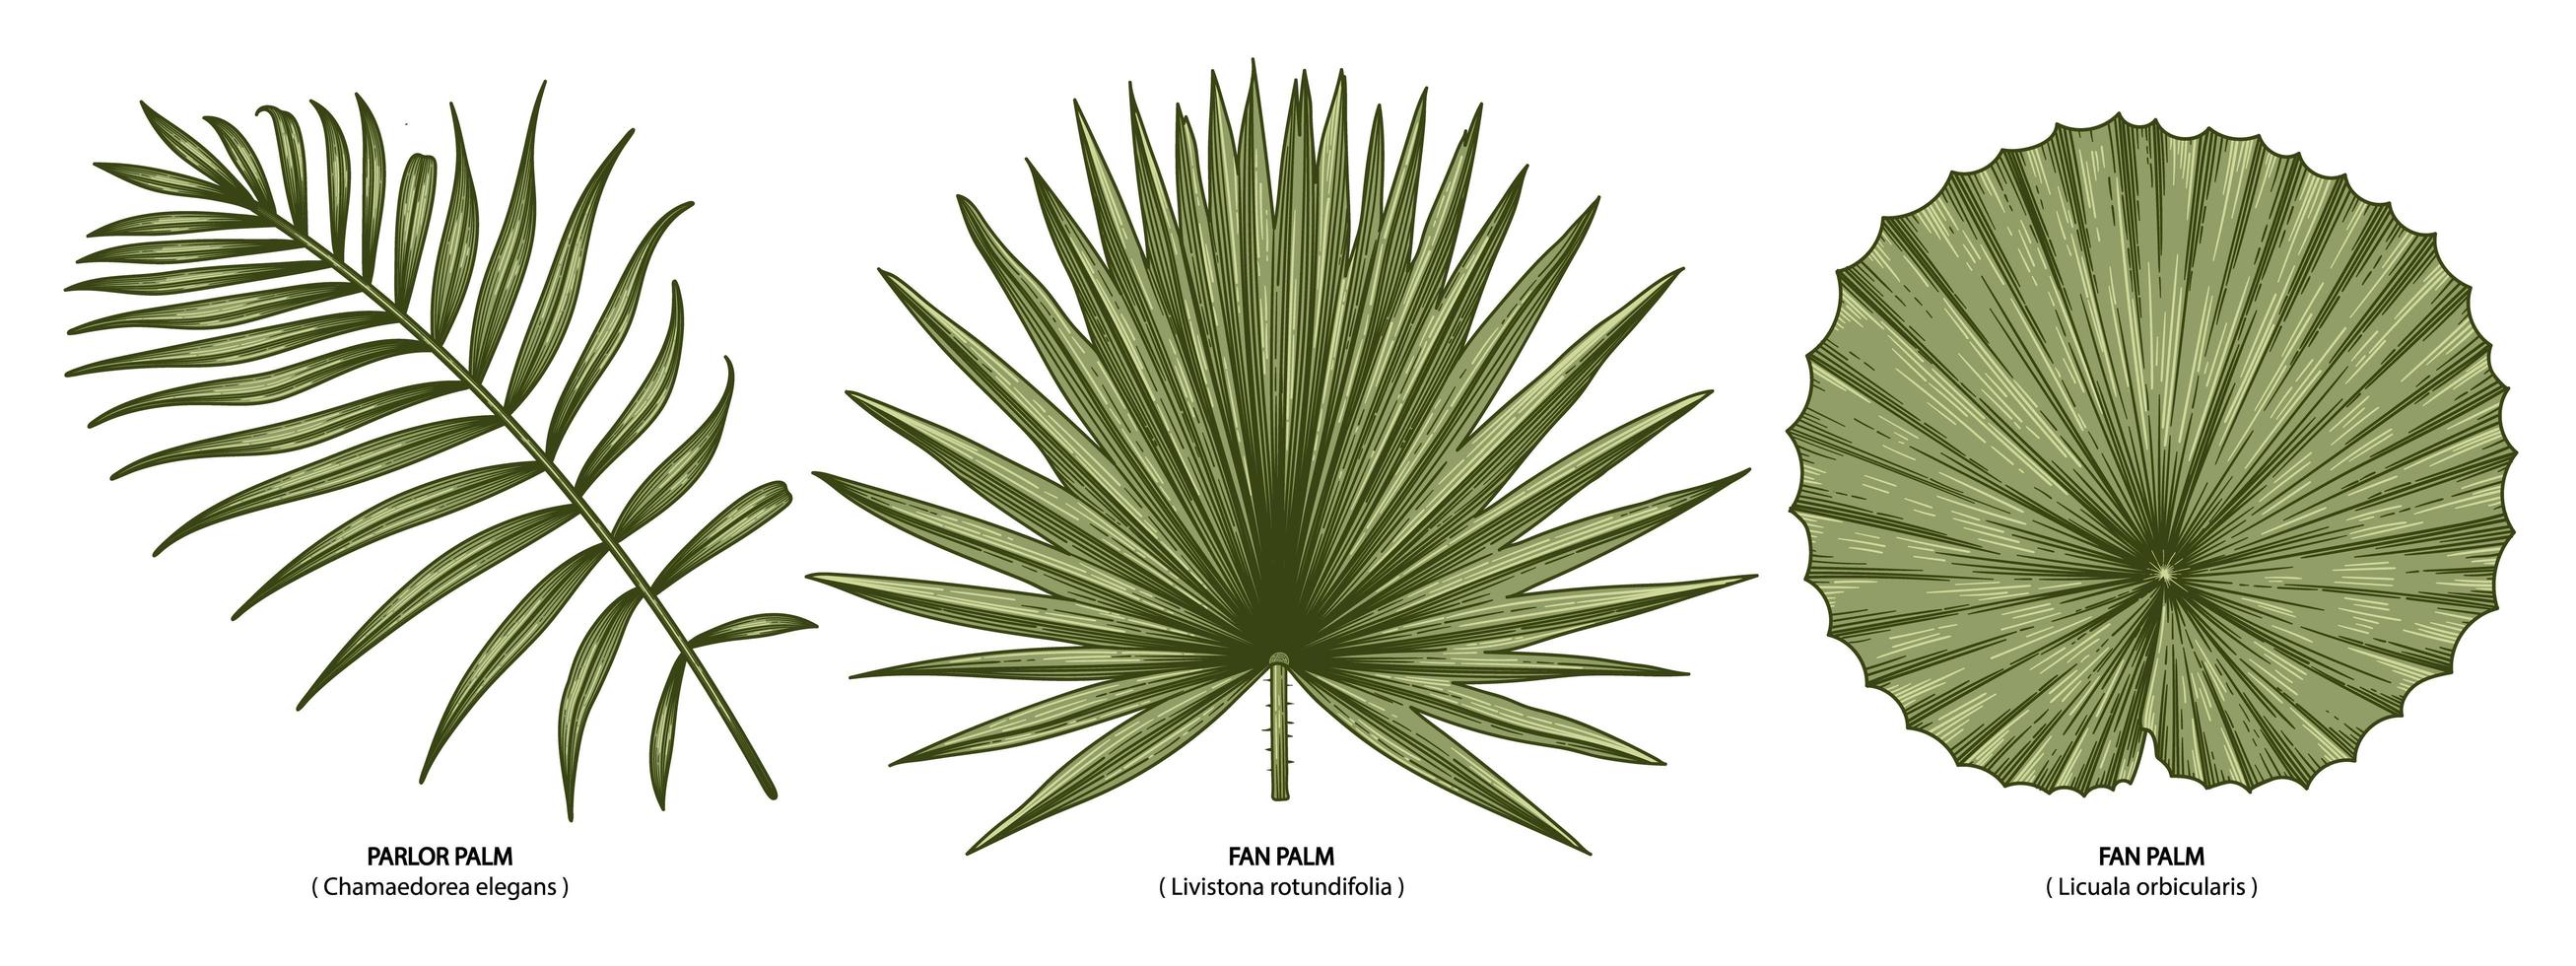 Vintage palm leaves set vector